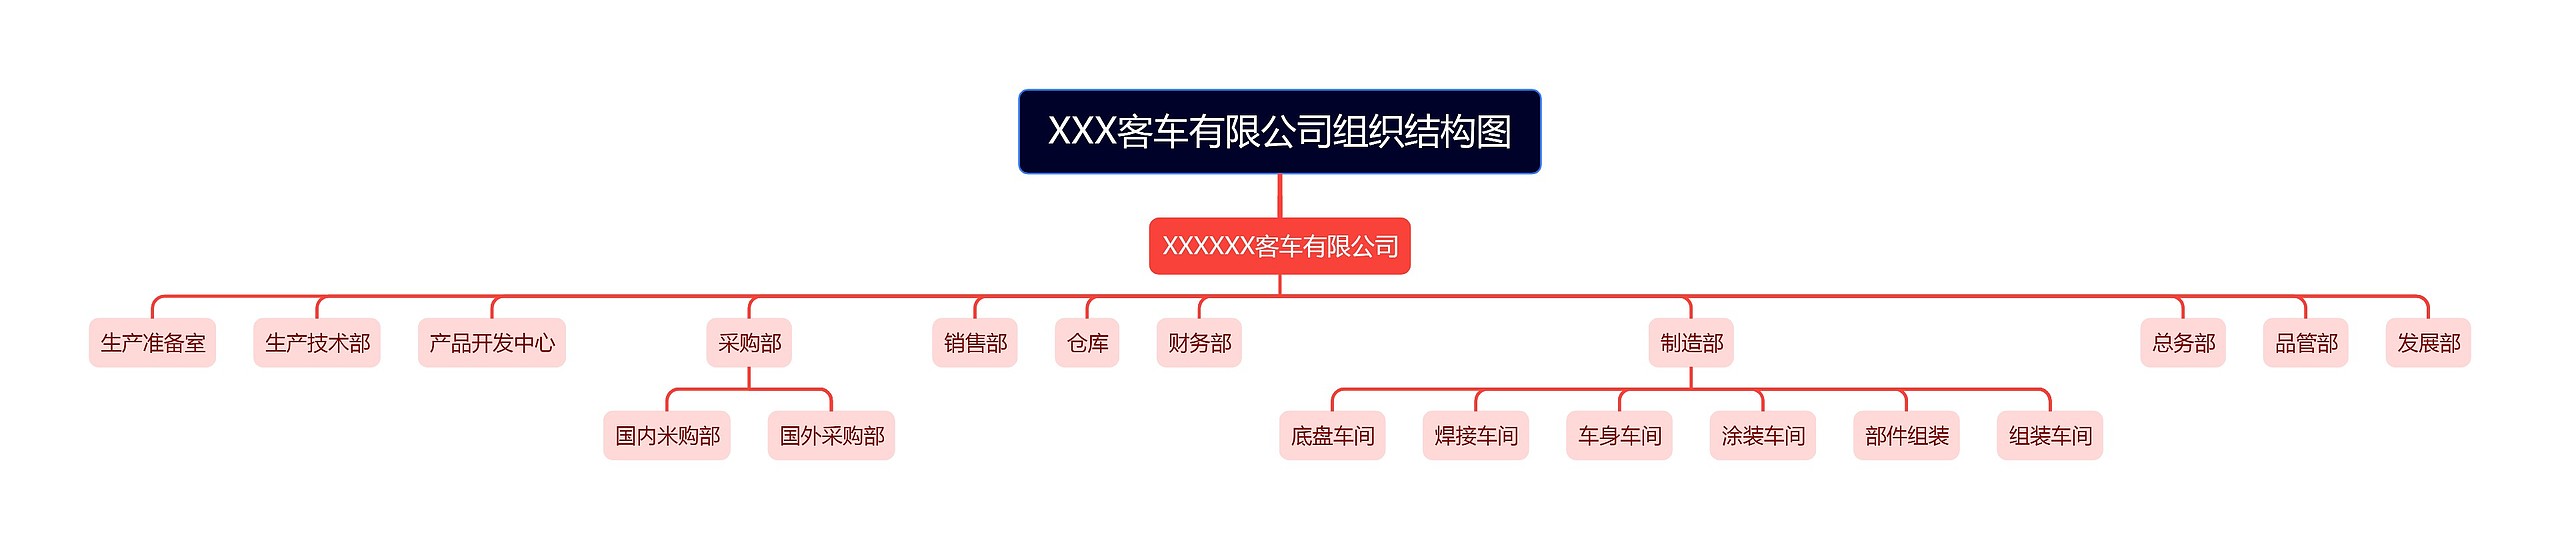 XXX客车有限公司组织结构图